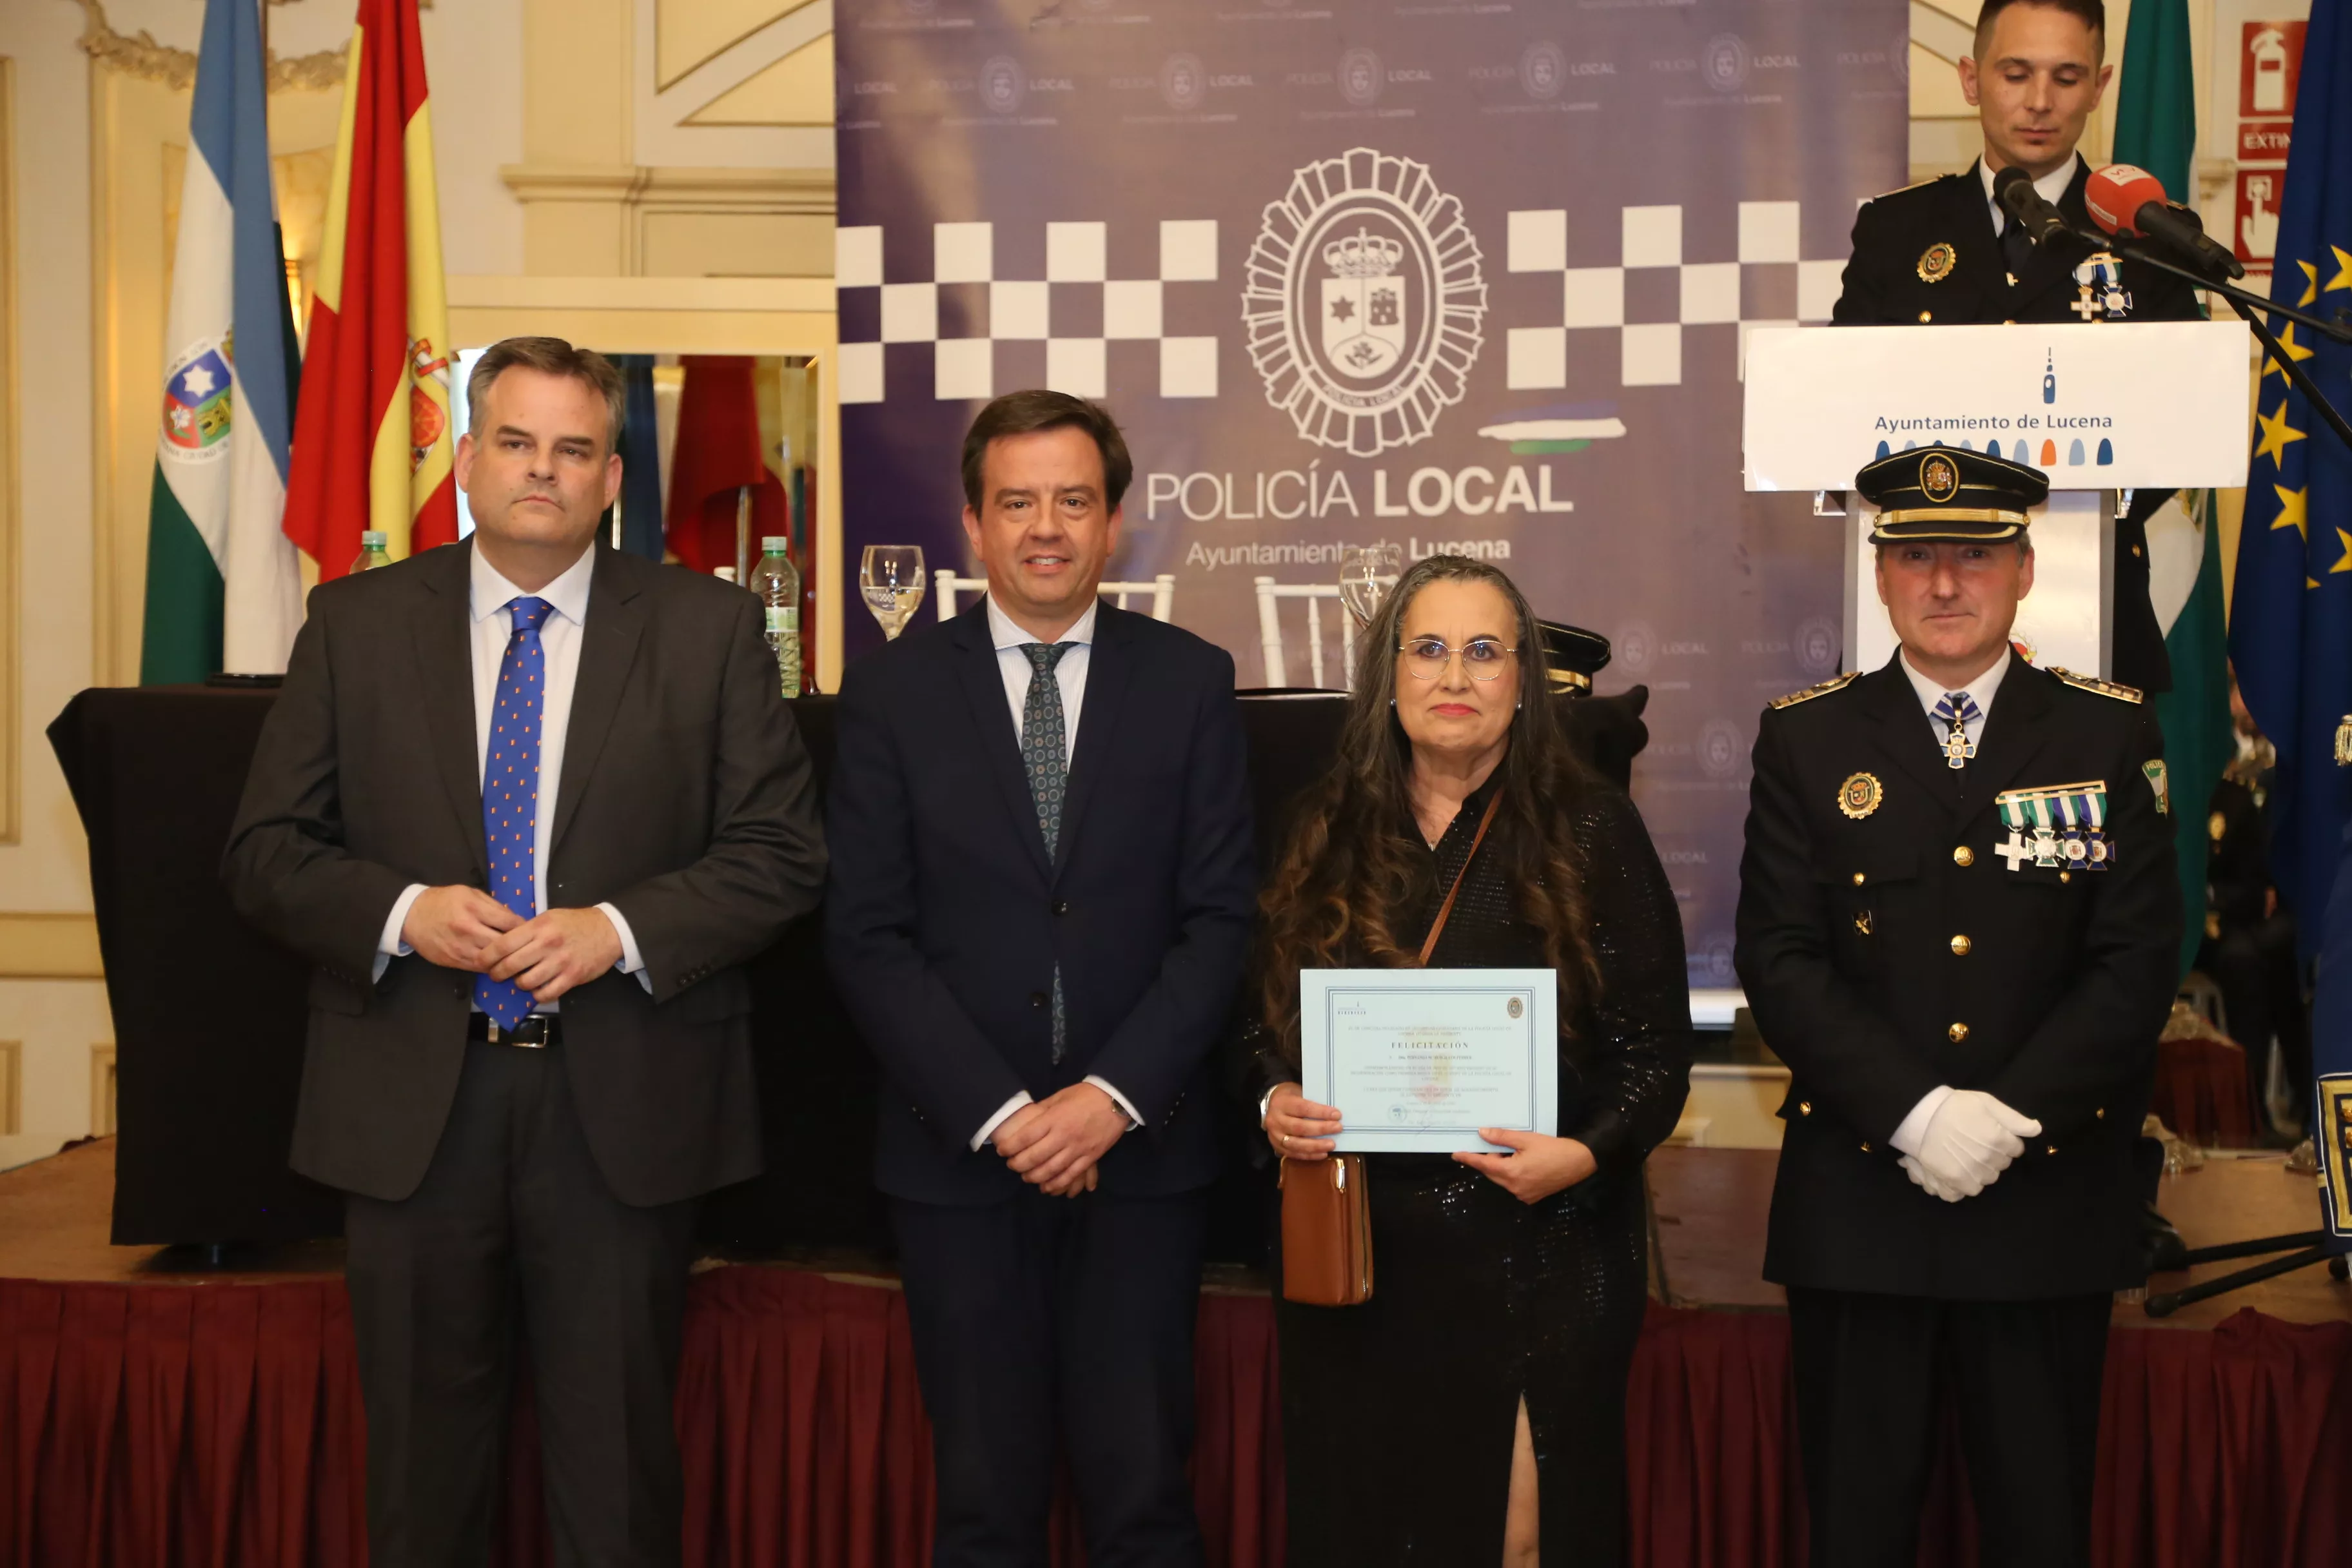 Acto Institucional Fiesta de la Policía Local de Lucena